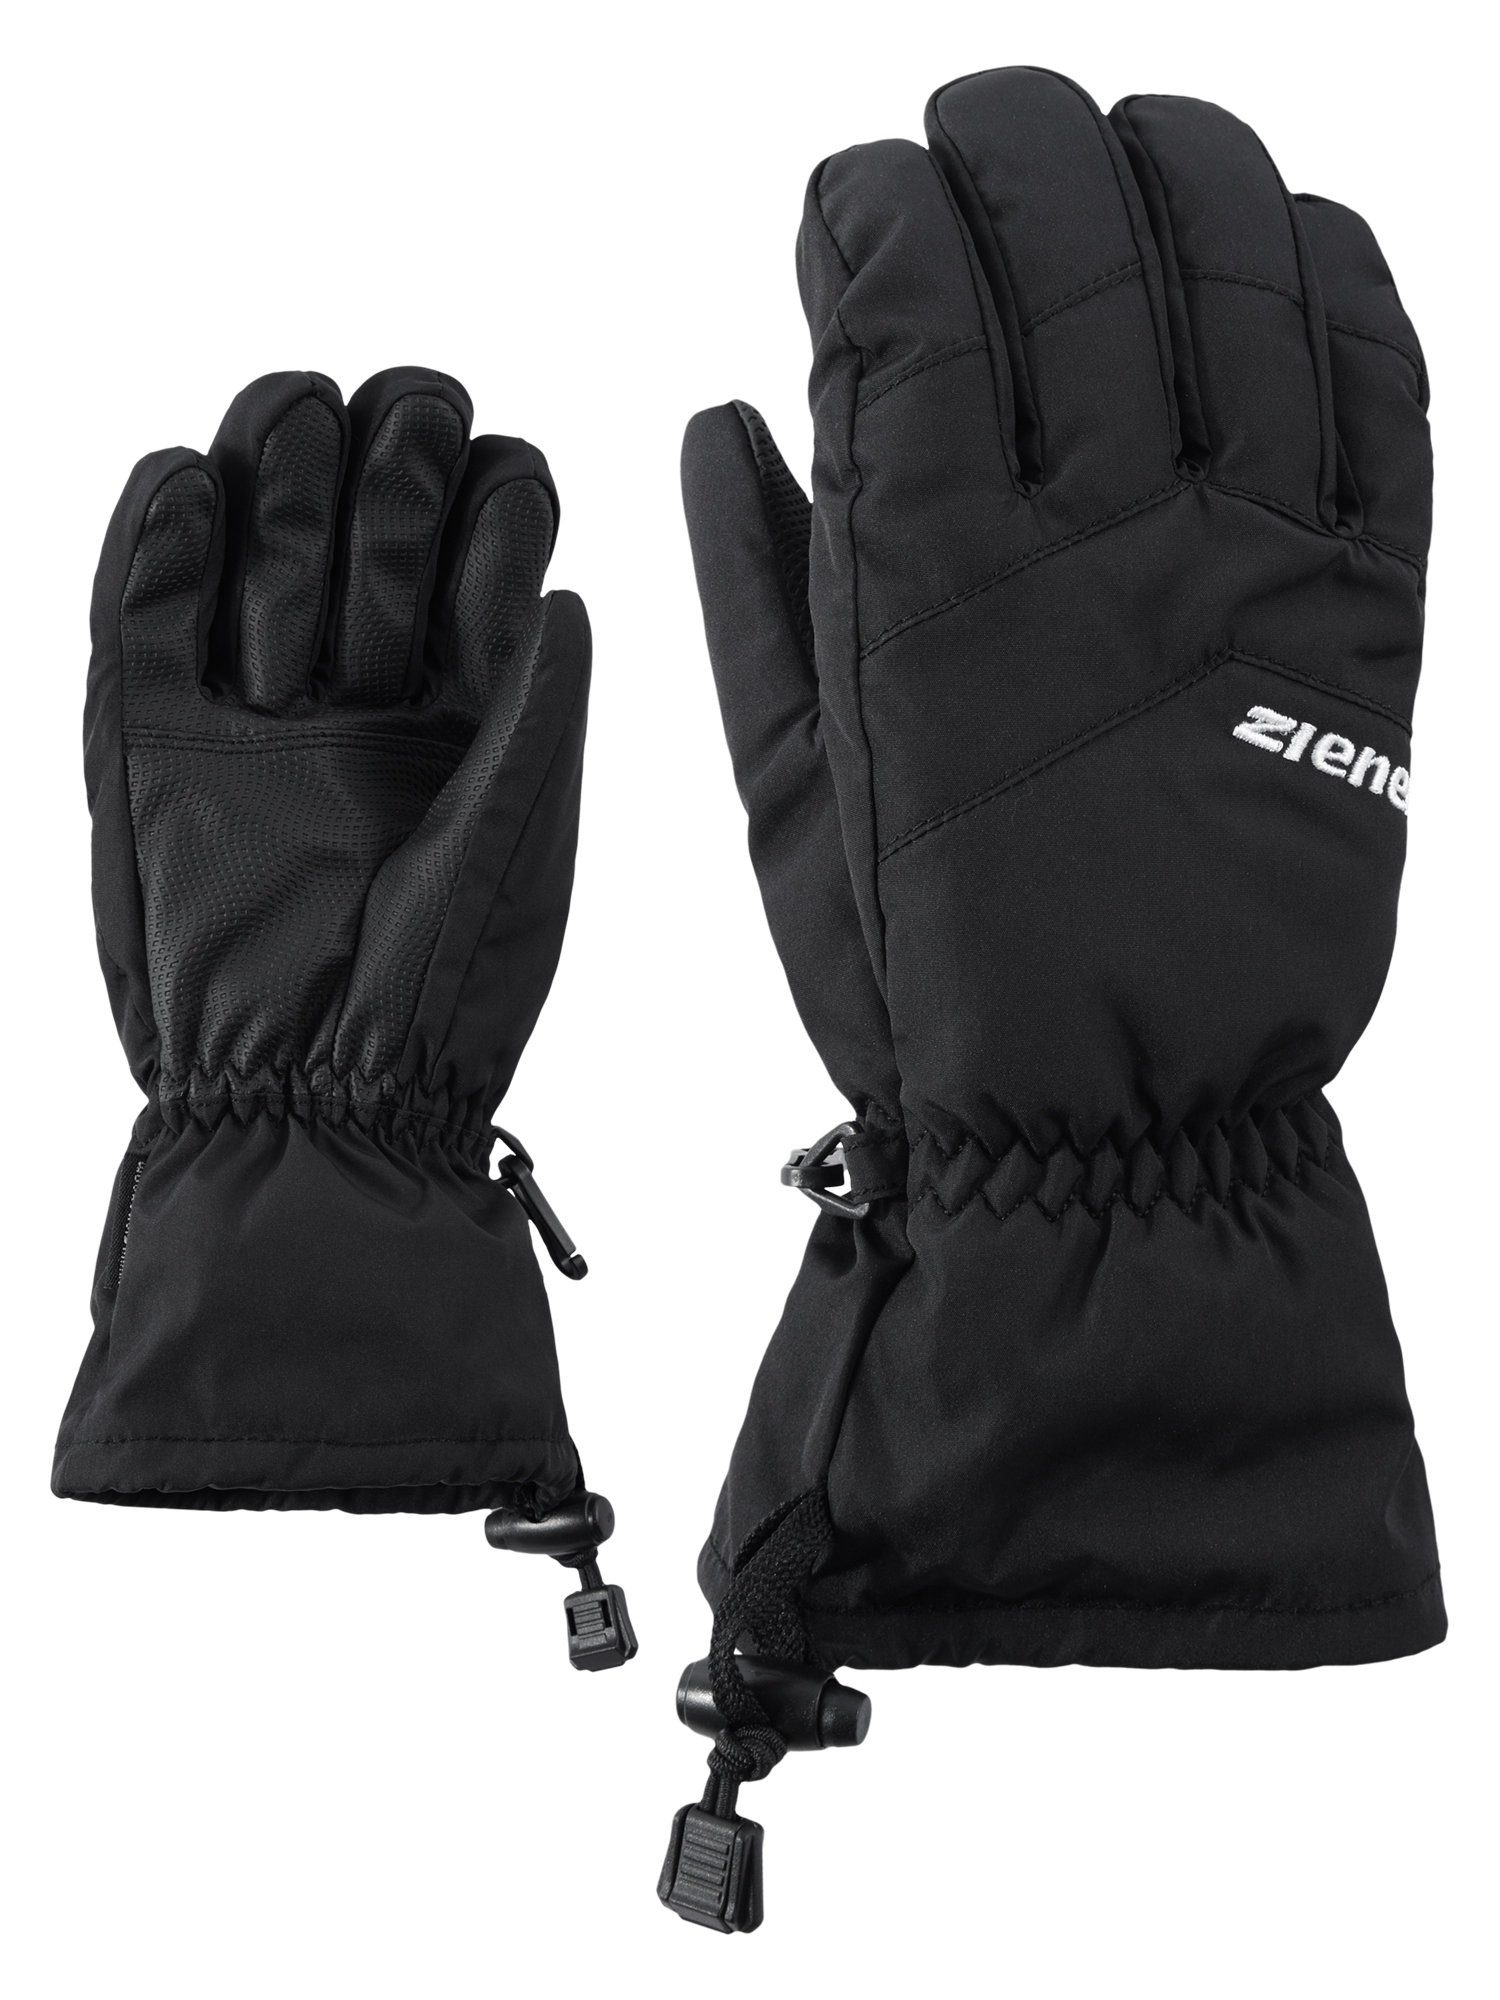 Ziener Lett | Junior Black 12 Glove 4059749246305 AsR | 6 